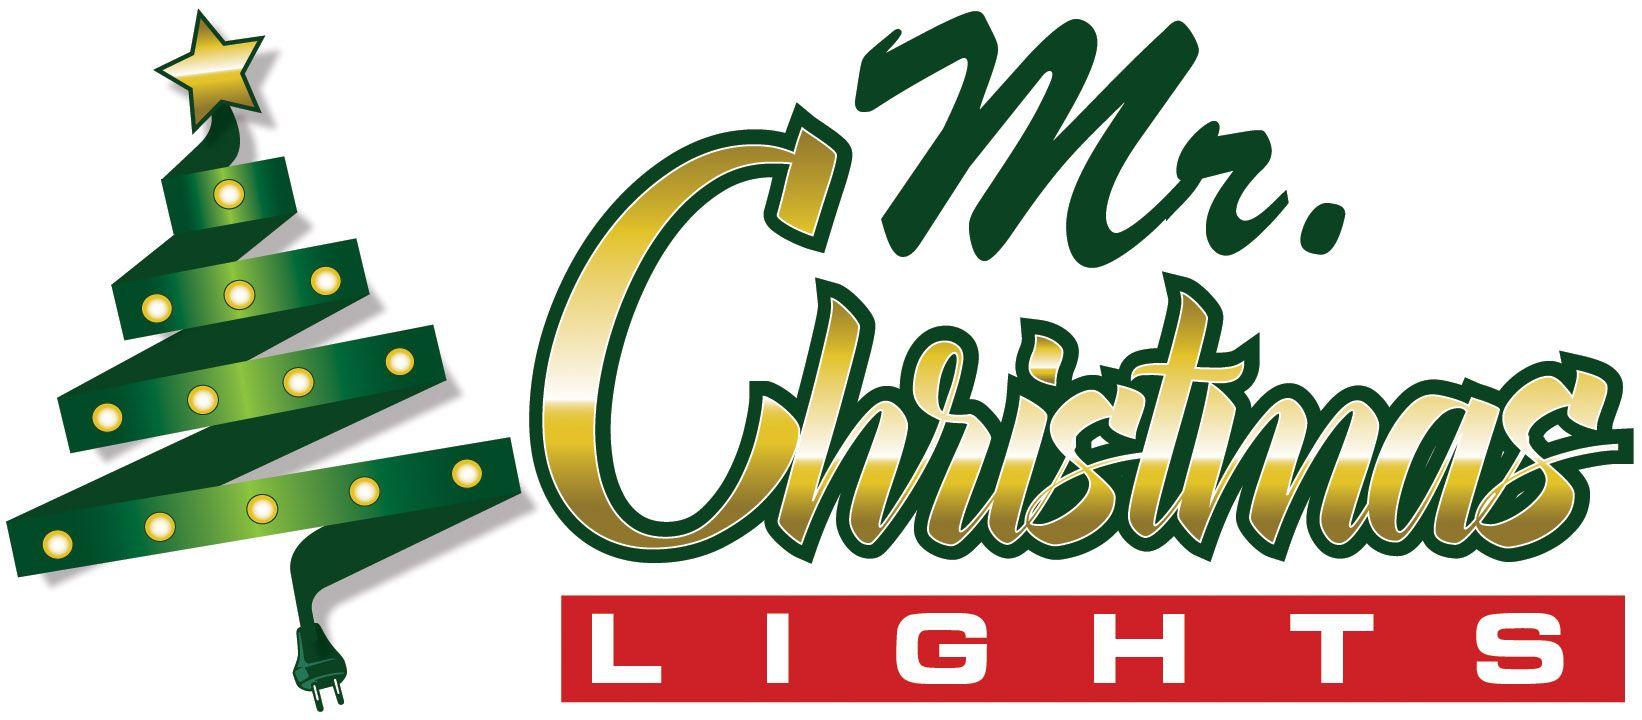 Christmas Lights Logo - Mr Christmas Lights | Christmas Lights for the Greater Miami